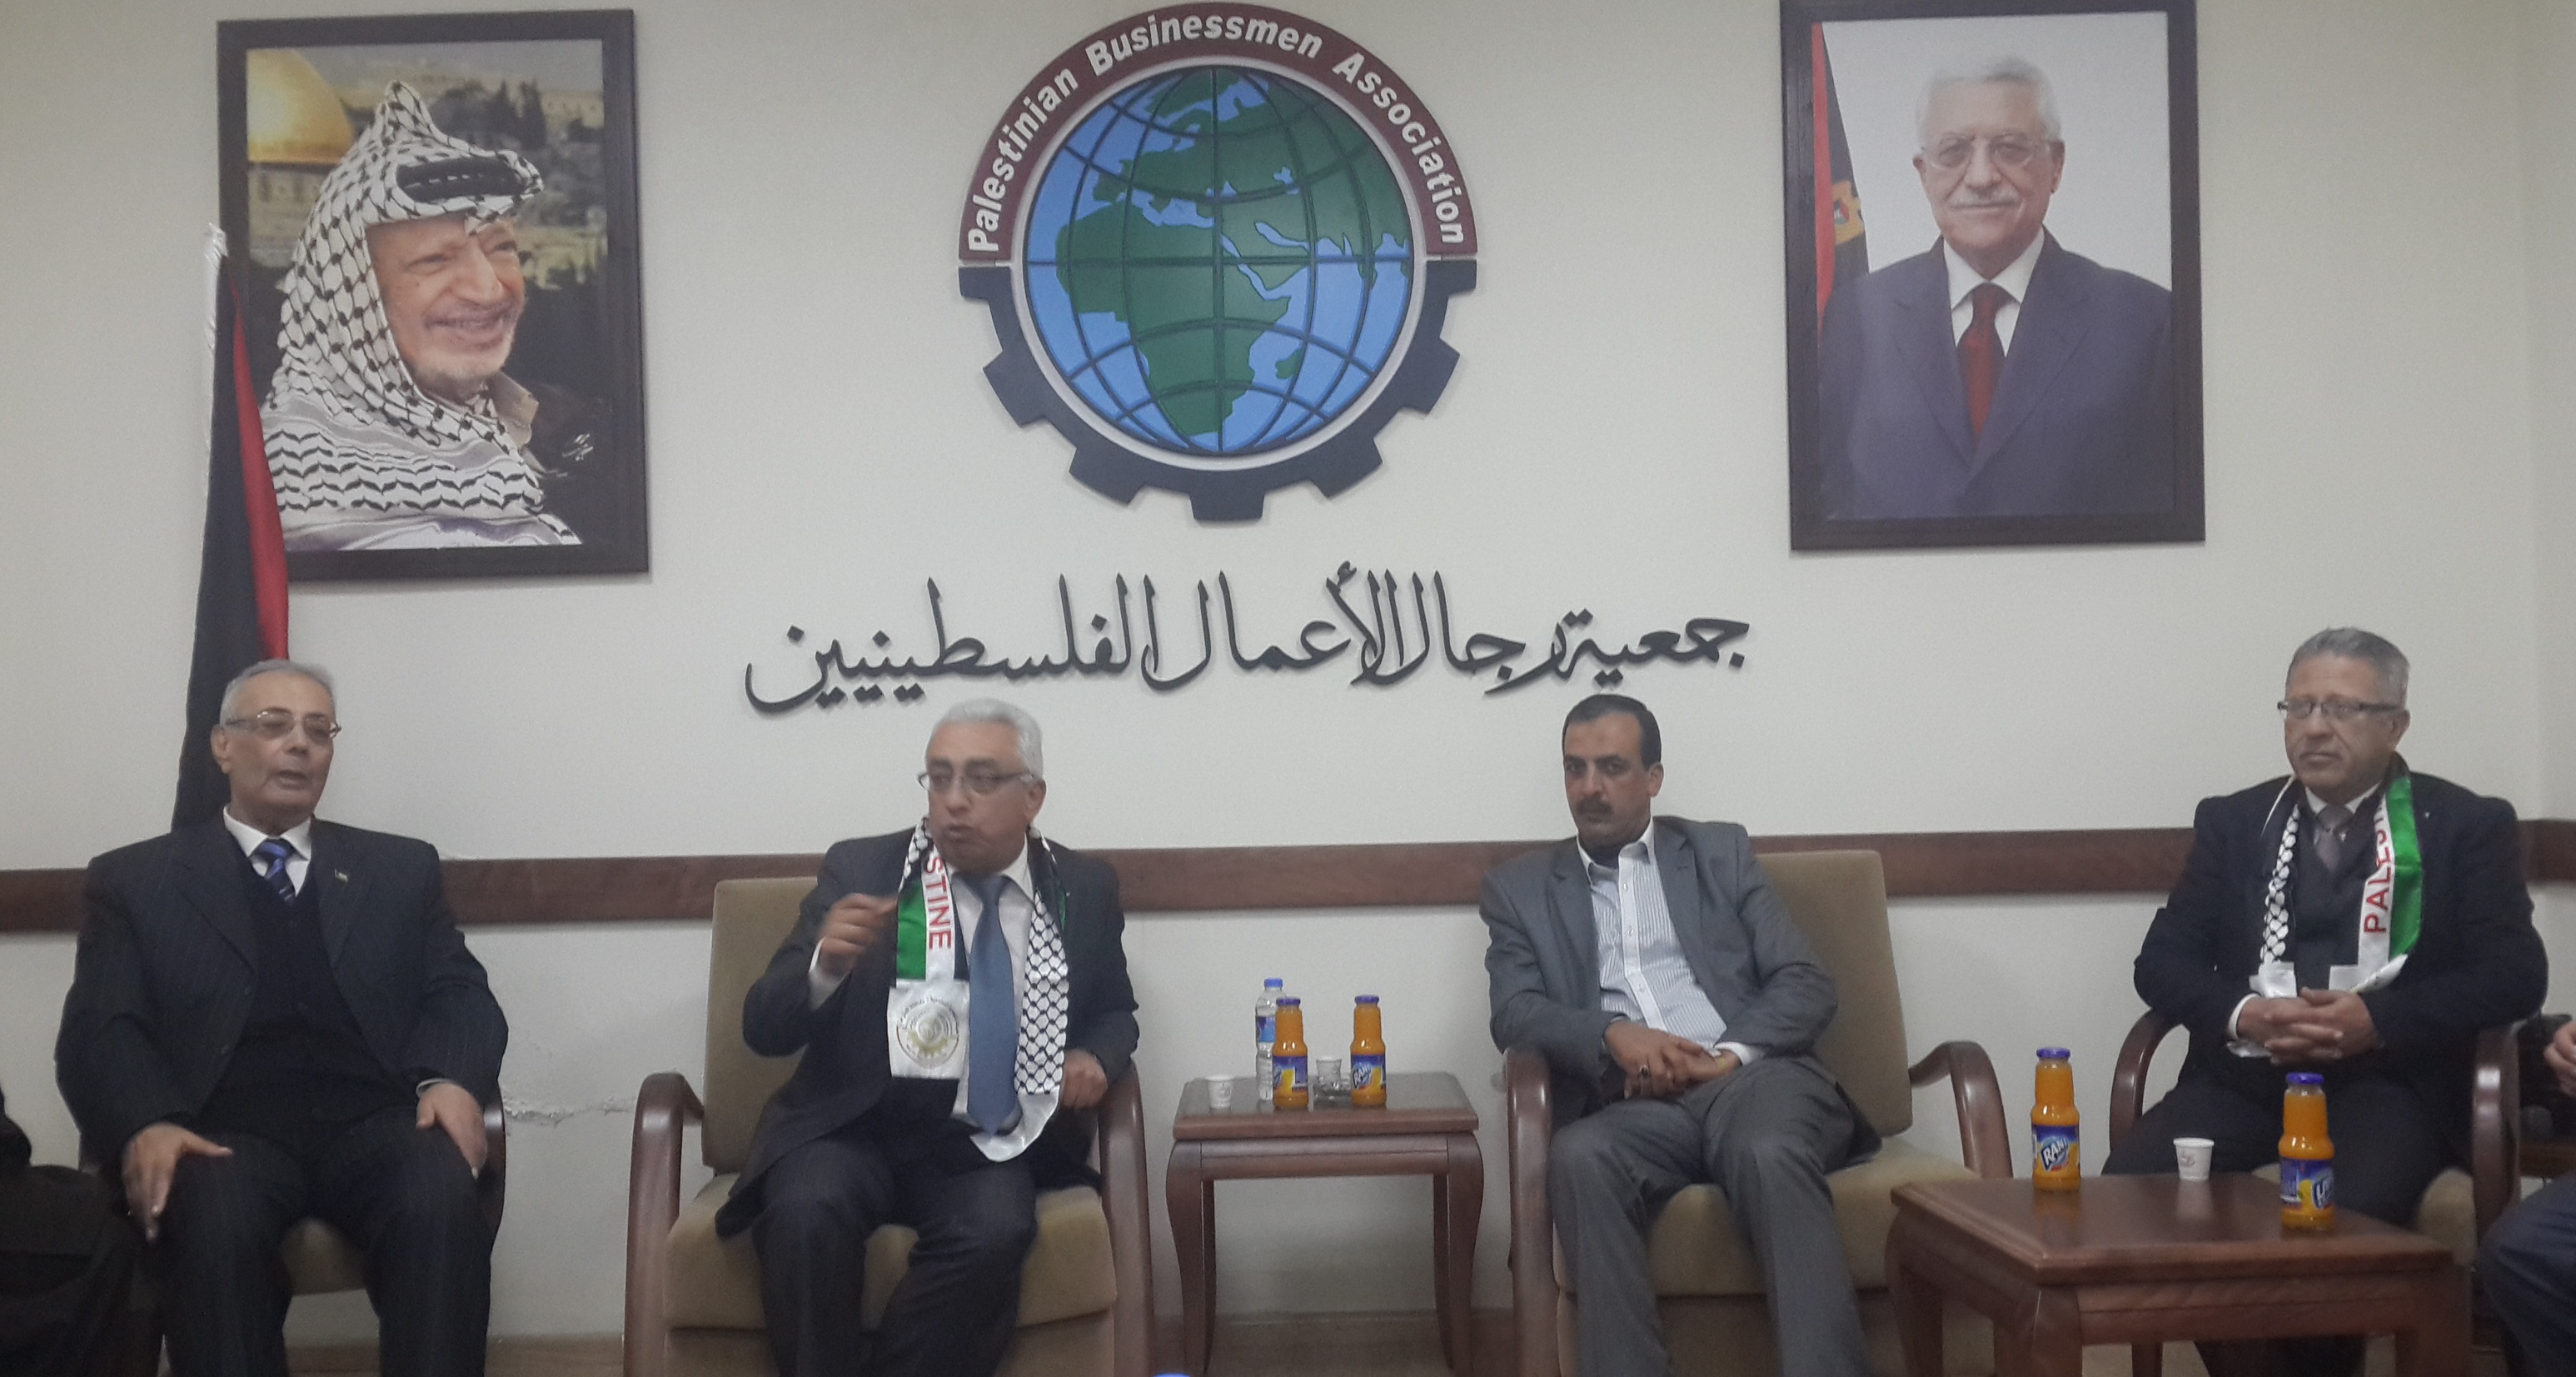 رئيس مجلس ادارة الغرفة حسام حجاوي يشارك في زيارة اتحاد الغرف التجارية الى قطاع غزة5/2/2014